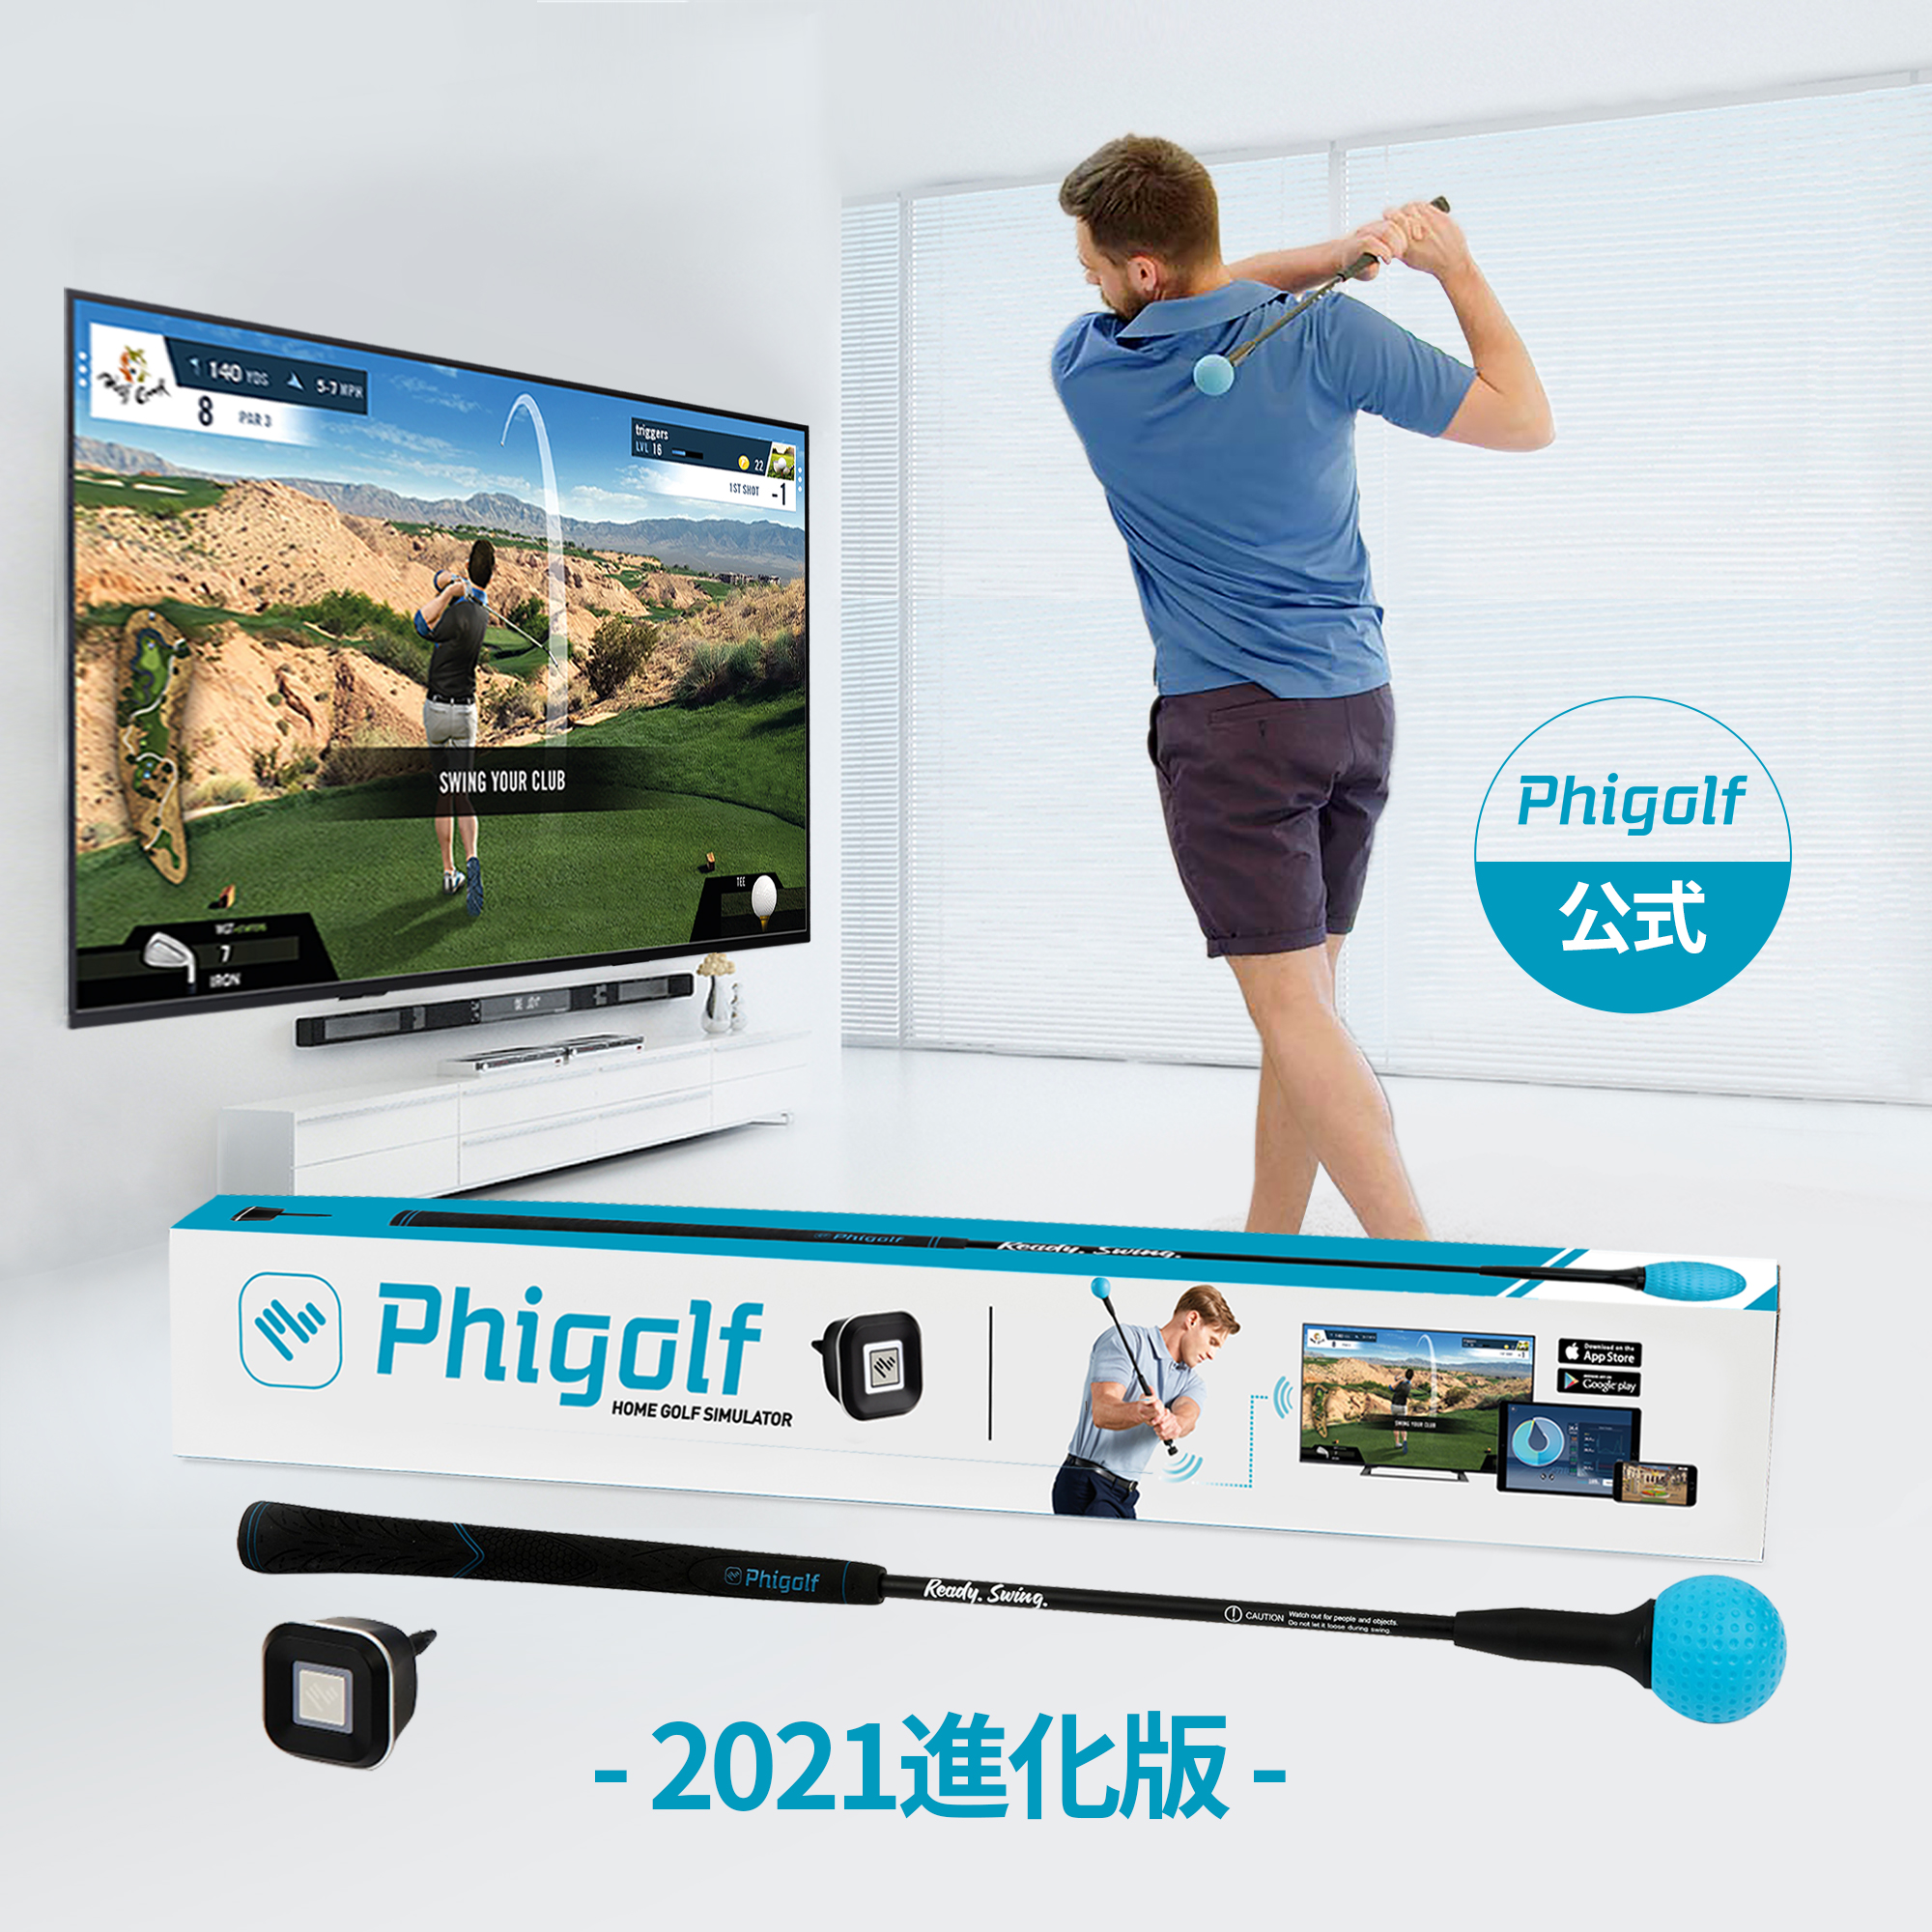 【海外通販2倍ポイント＋10％割引】Phigolf (ファイゴルフ)【2021強化版】ゴルフシュミレーター ゴルフ練習器具 シミュレーター  ヘッドスピード/飛距離測定センサー内蔵【IOS/Android/SmartTV全対応/初心者プロ/無料アプリ(Phigolf/WGT/E6 